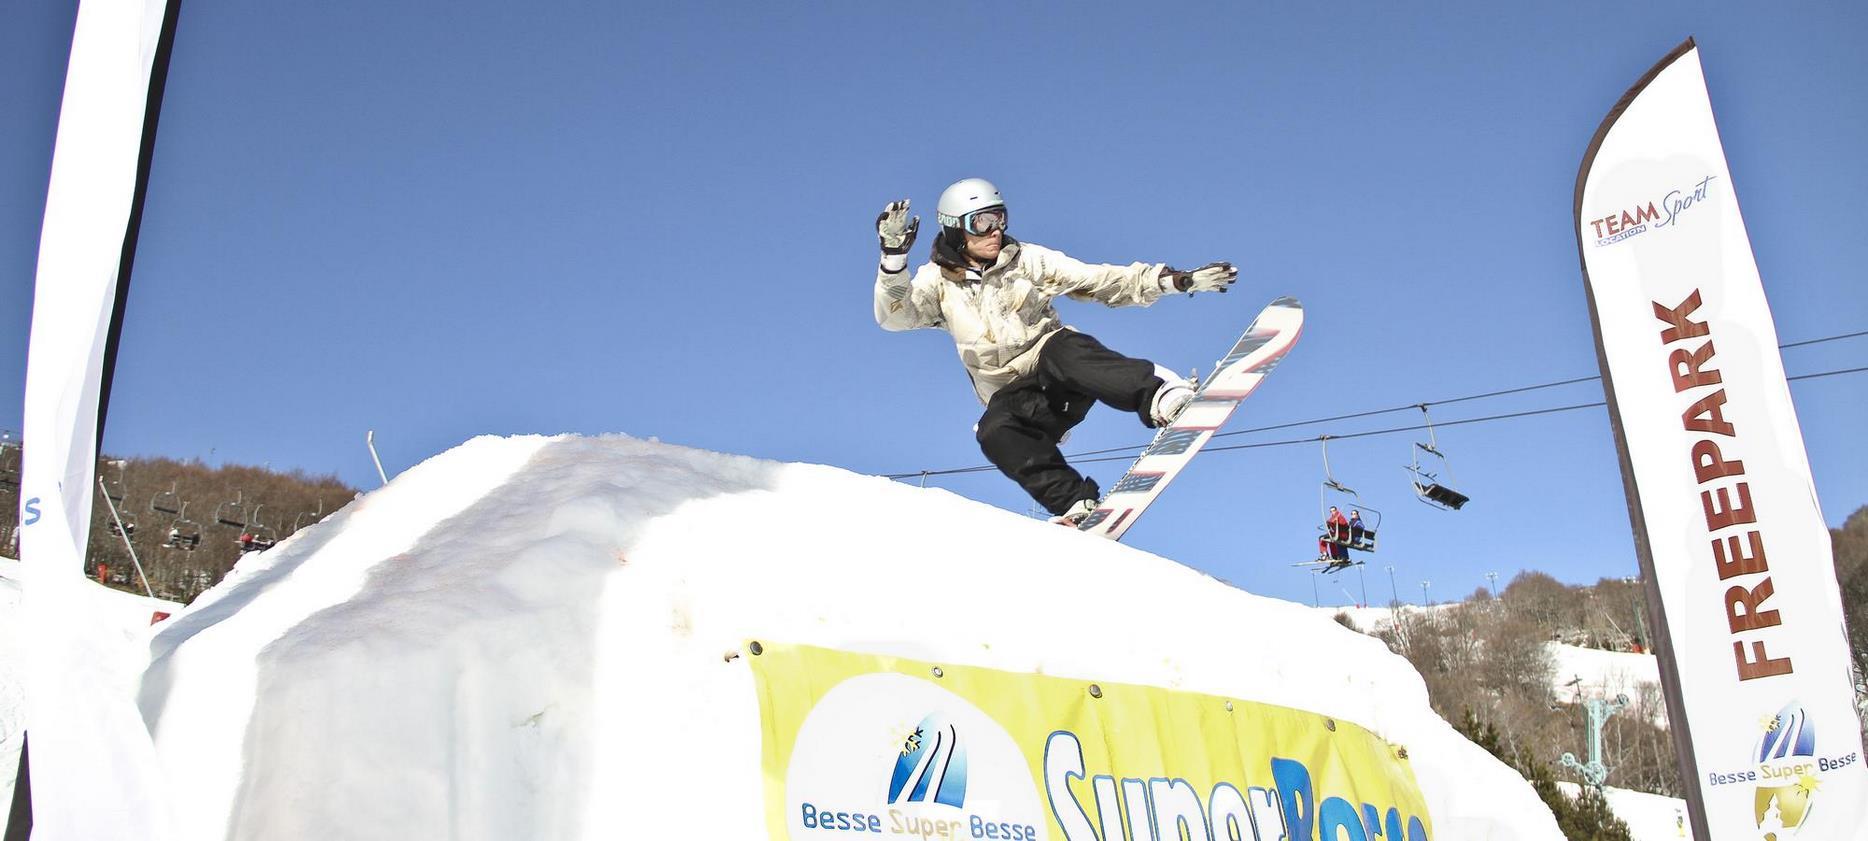 Super Besse - le plain de sensation en snowboard